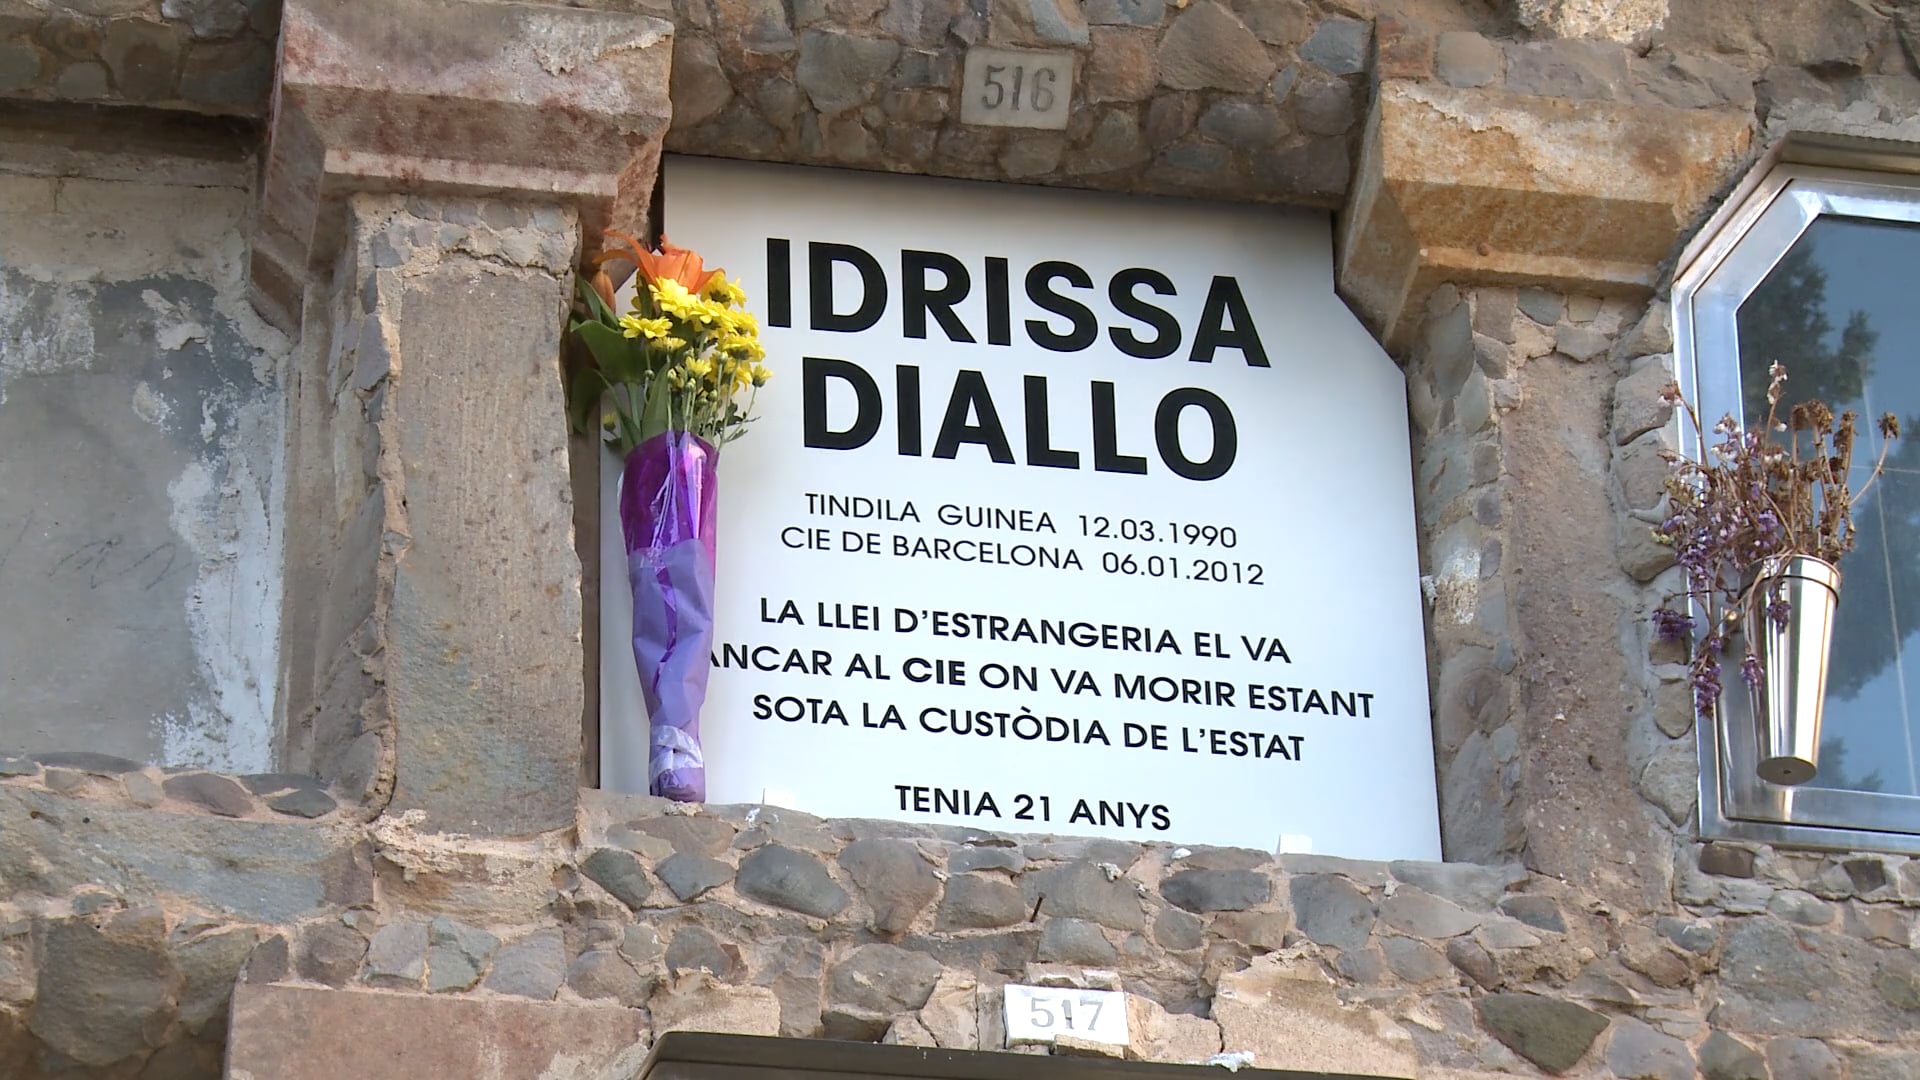 Homenatge a Idrissa Diallo (14 de juny de 2017) Via @Metromuster